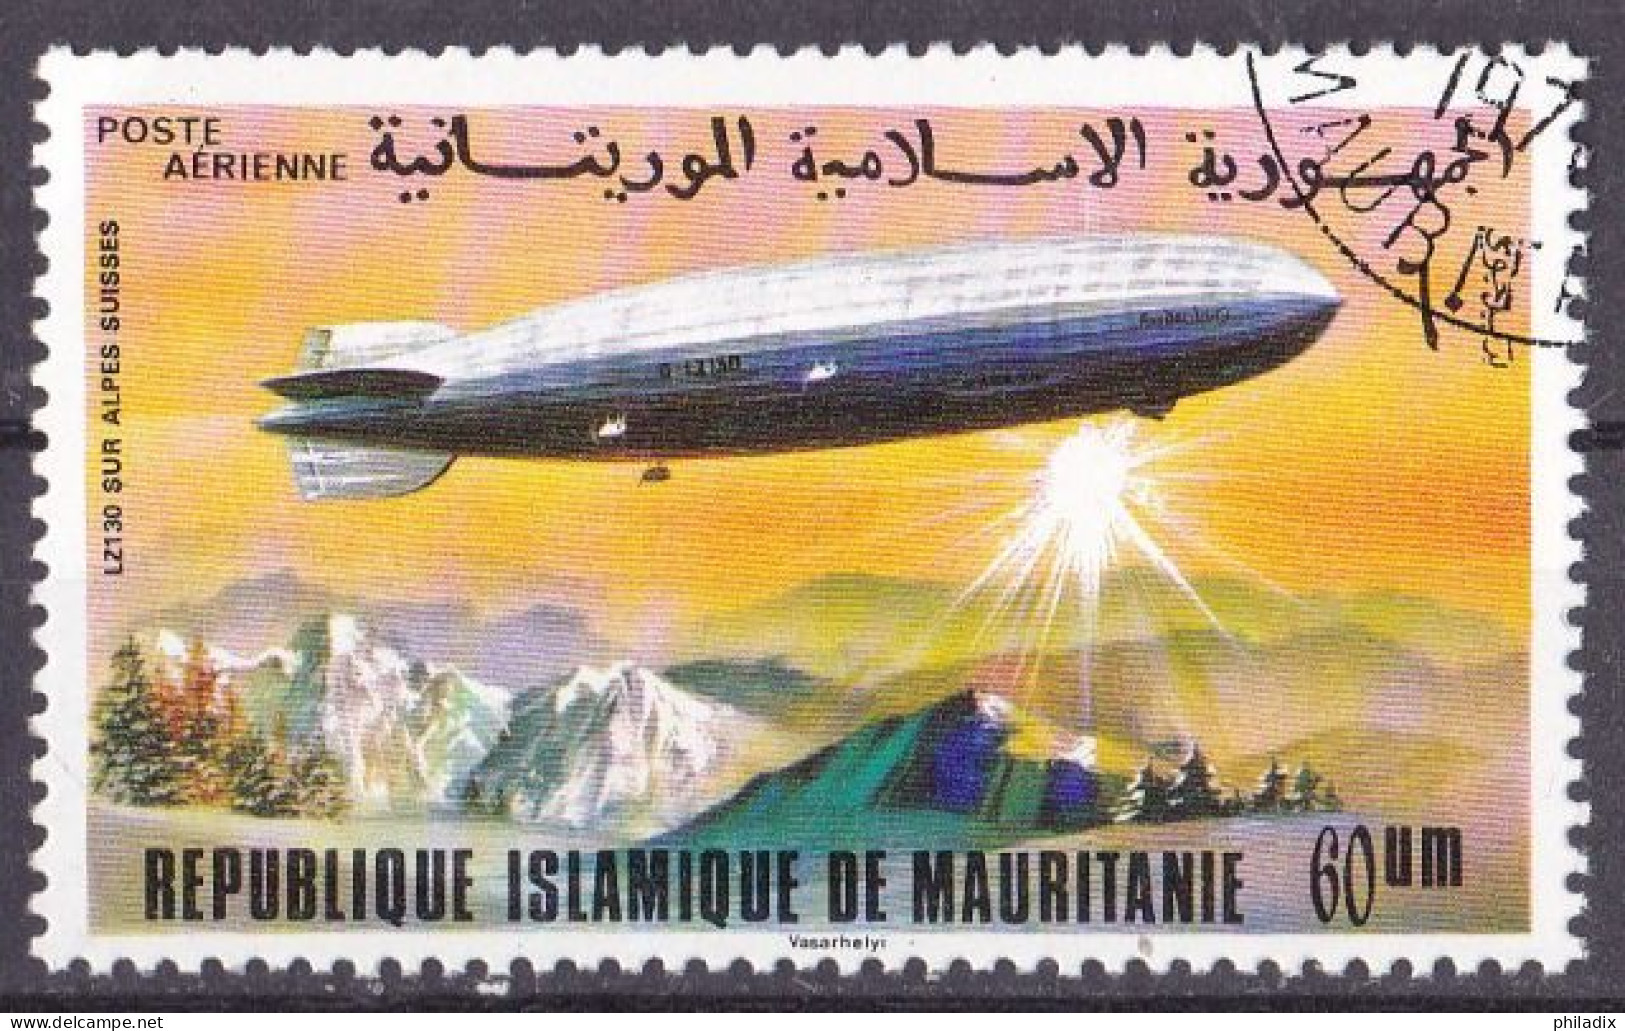 Mauretanien Marke Von 1976 O/used (A5-10) - Mauretanien (1960-...)